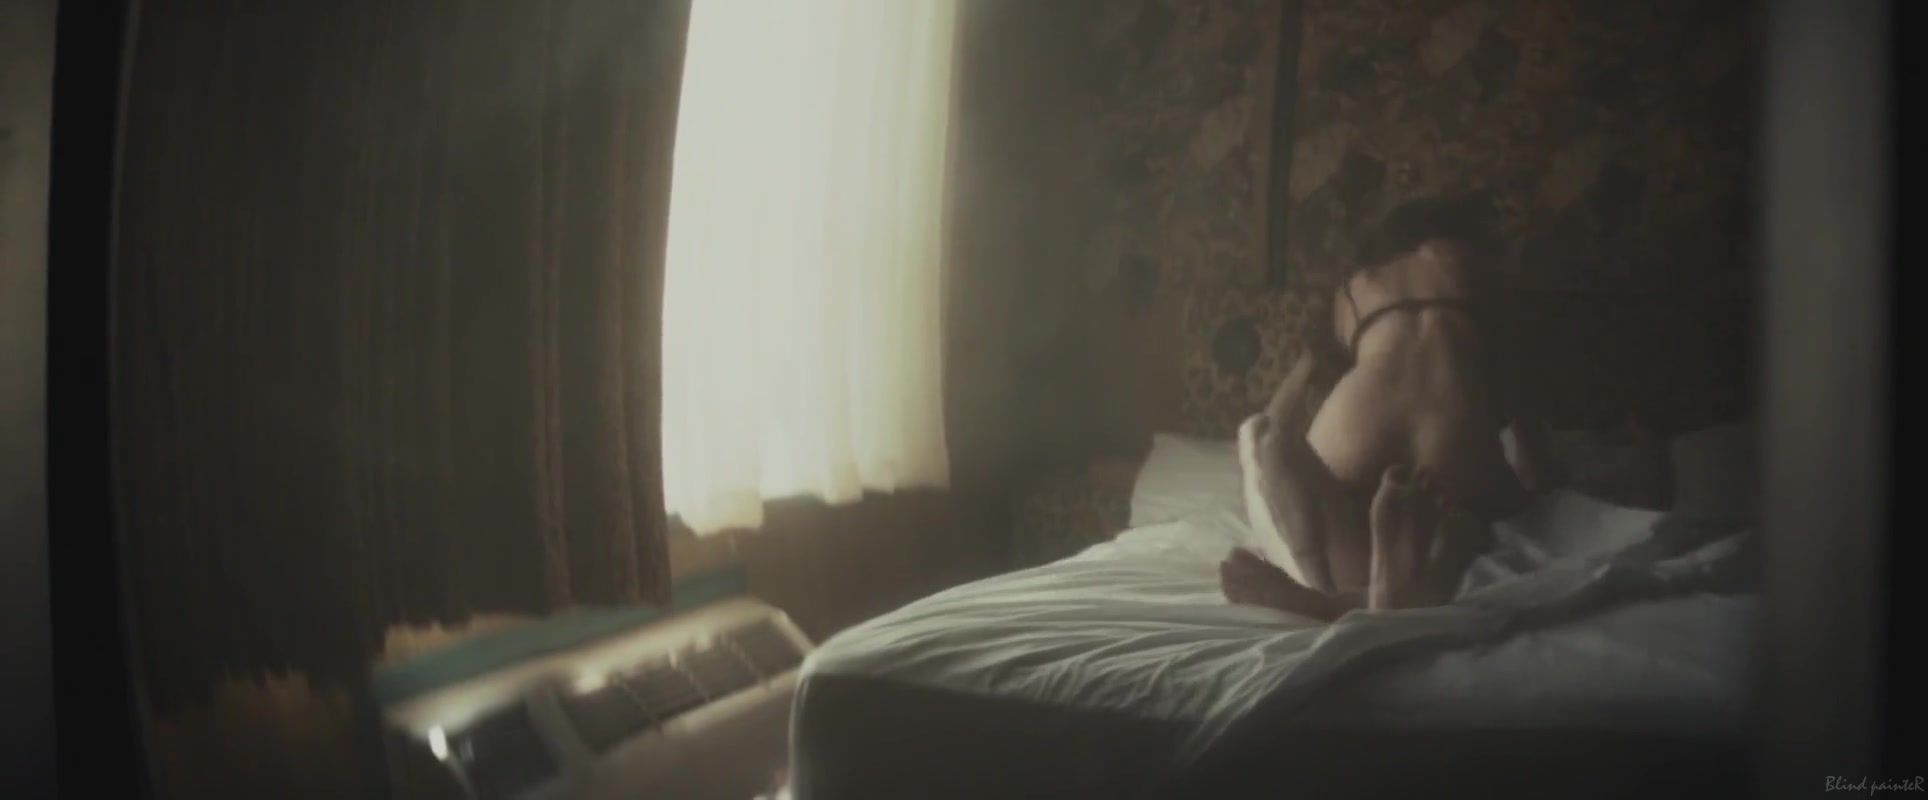 Sfm Olivia Wilde nude - Meadowland (2015) Sextape